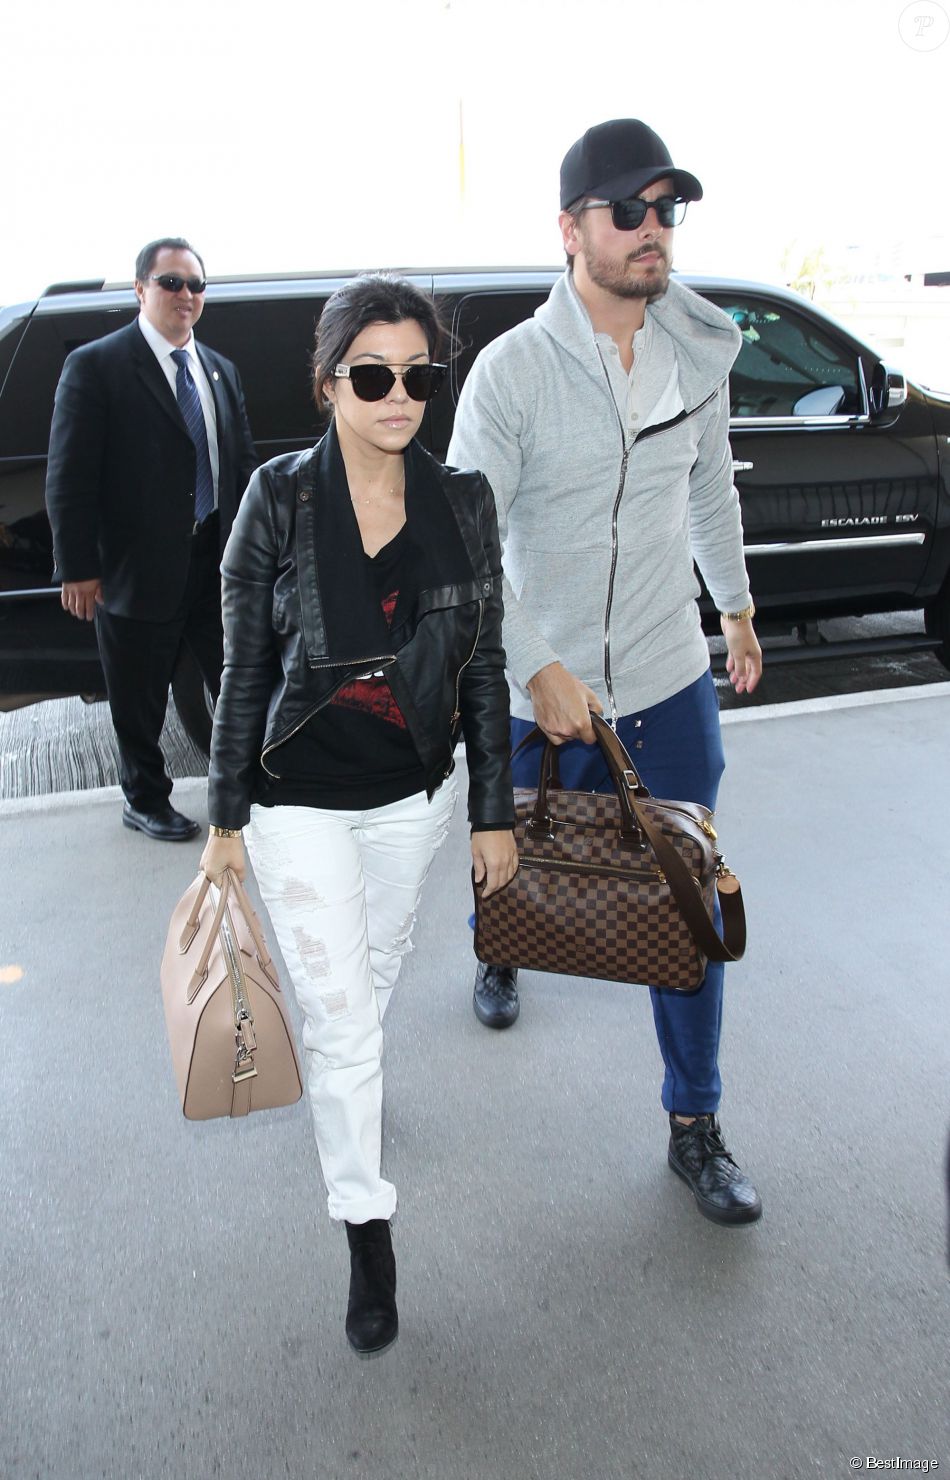  Kourtney Kardashian et son fianc&amp;eacute; Scott Disick arrivent &amp;agrave; l&#039;a&amp;eacute;roport de Los Angeles pour prendre un vol, le 24 mars 2014.&amp;nbsp;  